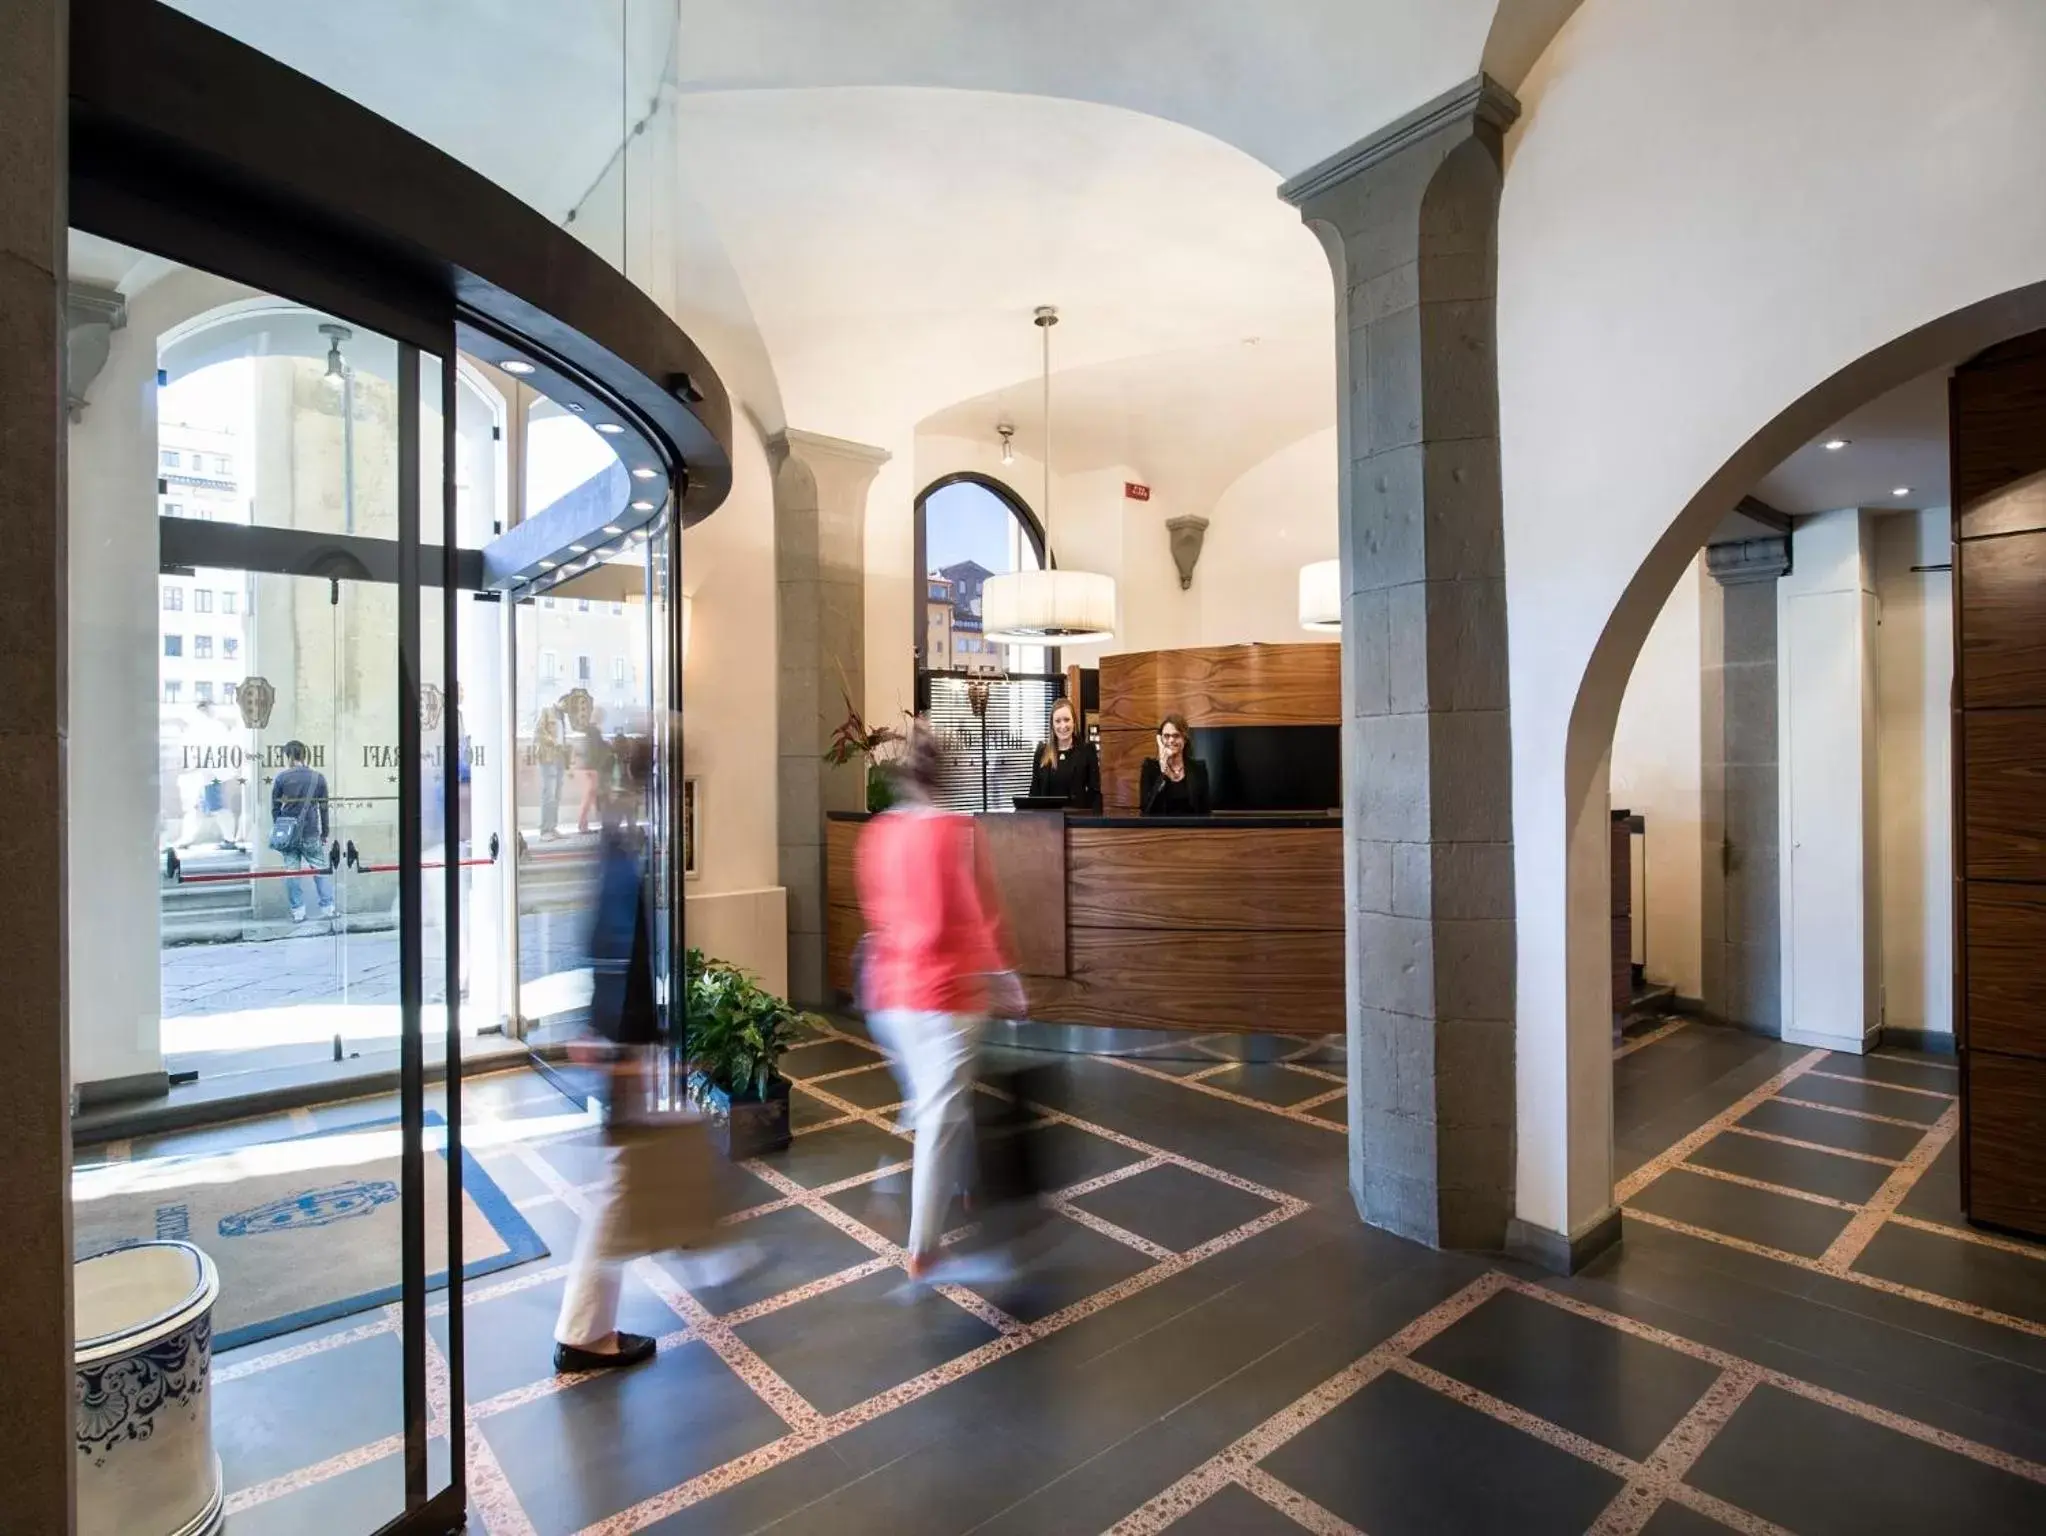 Lobby or reception in Hotel degli Orafi